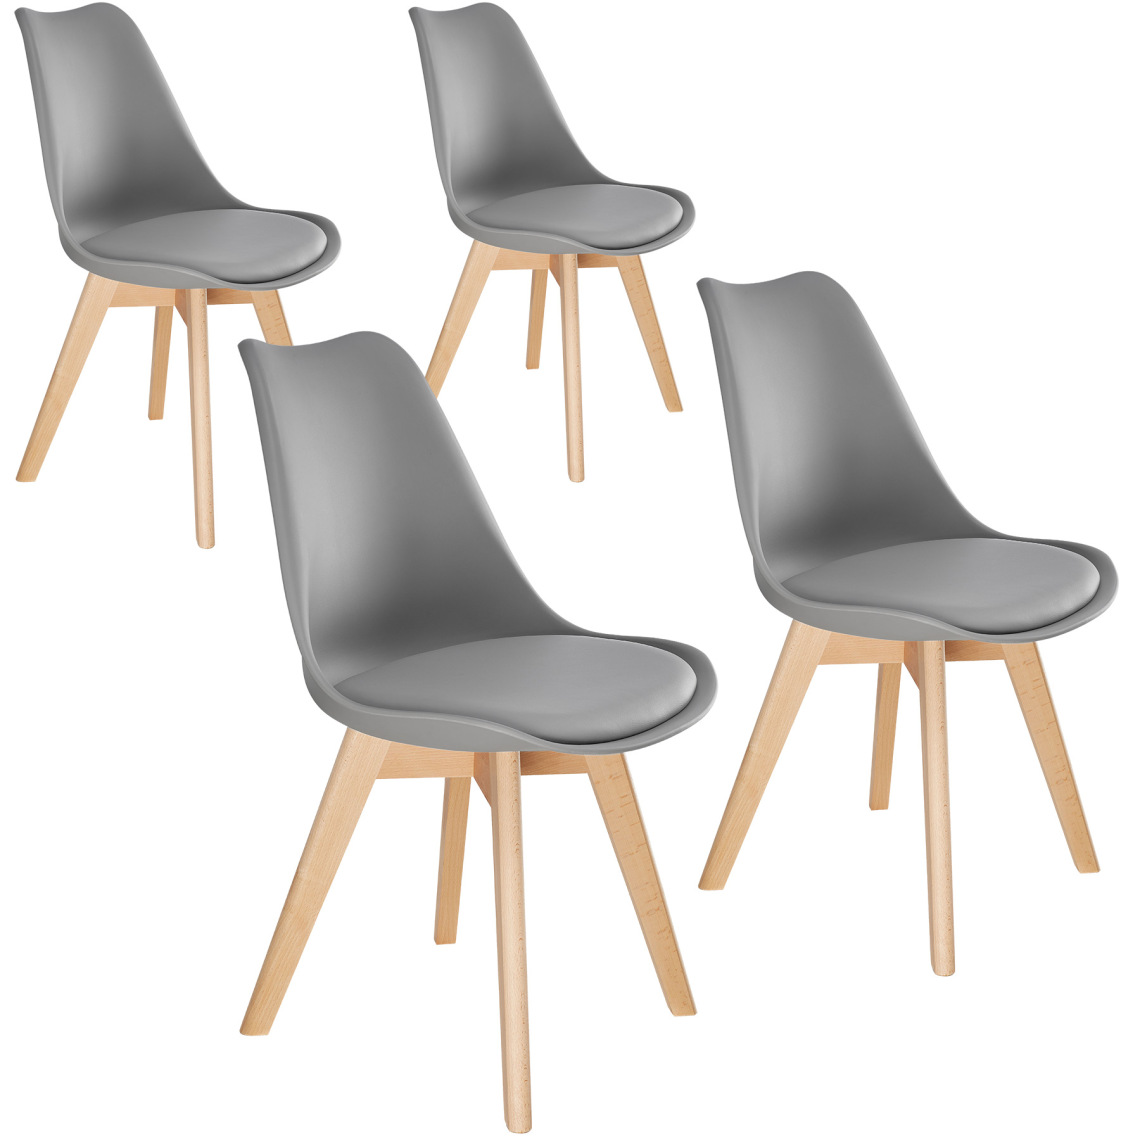 Tectake - 4 Chaises de Salle à Manger FRÉDÉRIQUE Style Scandinave Pieds en Bois Massif Design Moderne - gris - Chaises